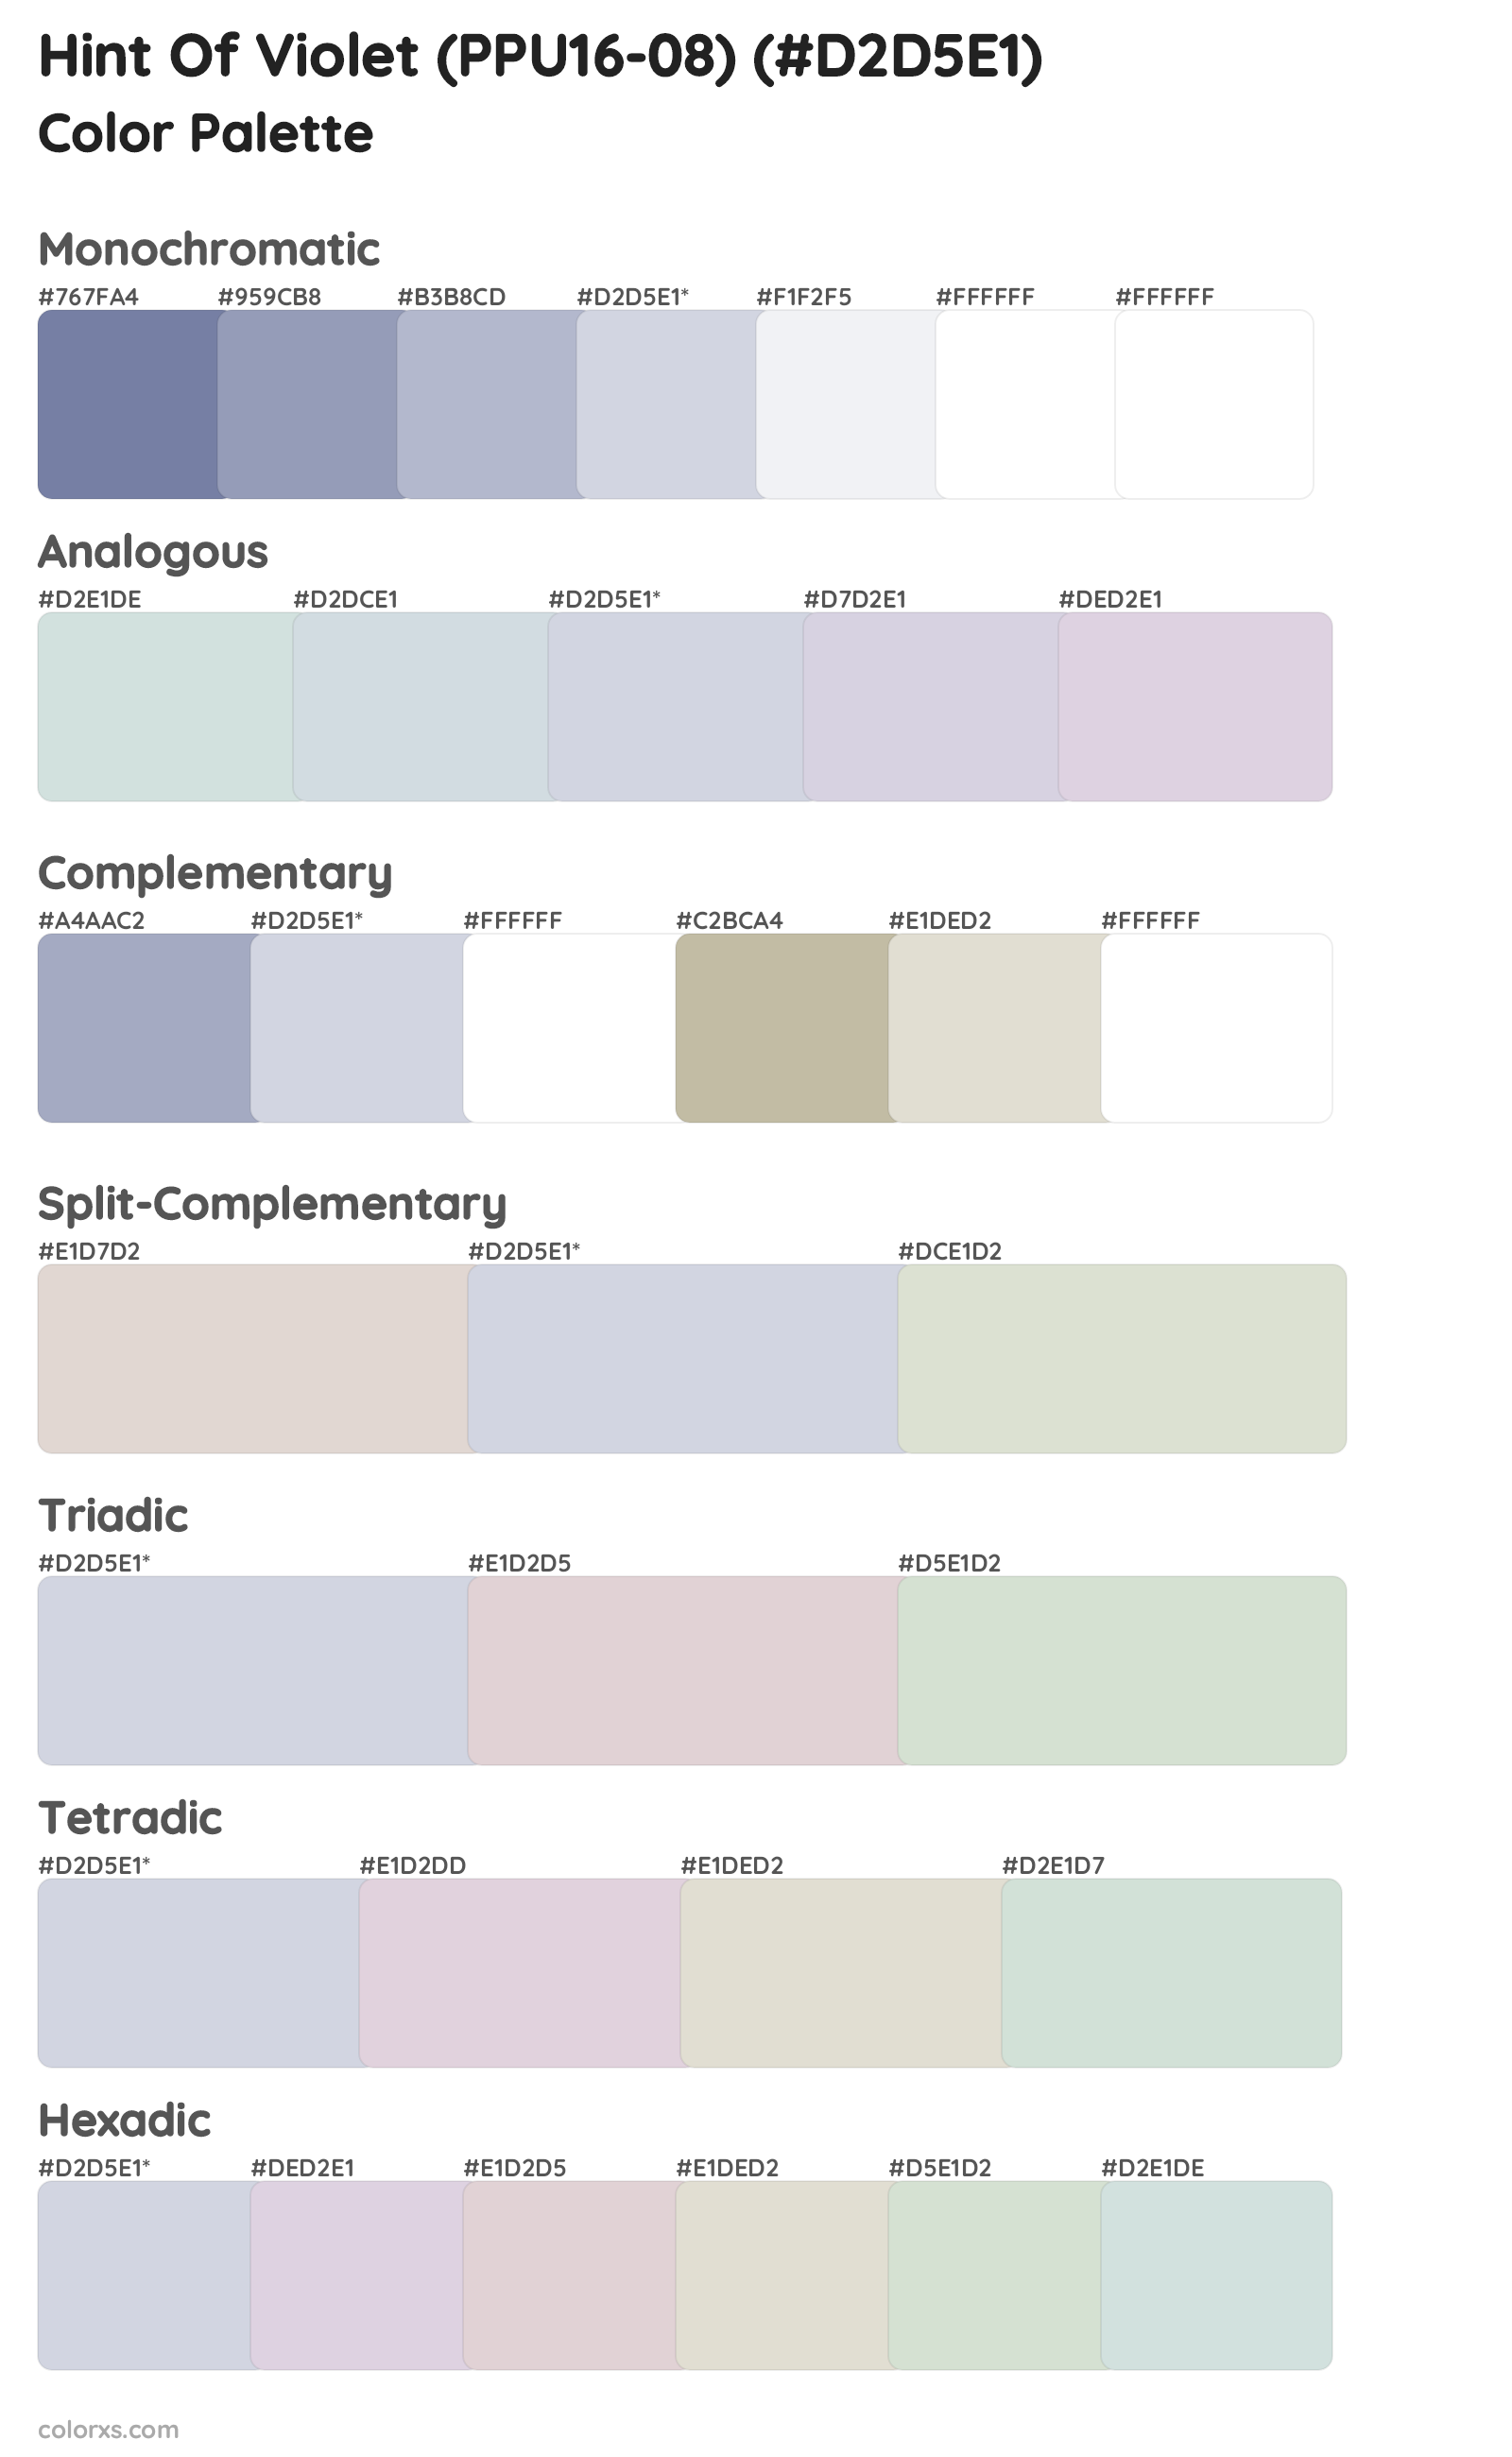 Hint Of Violet (PPU16-08) Color Scheme Palettes